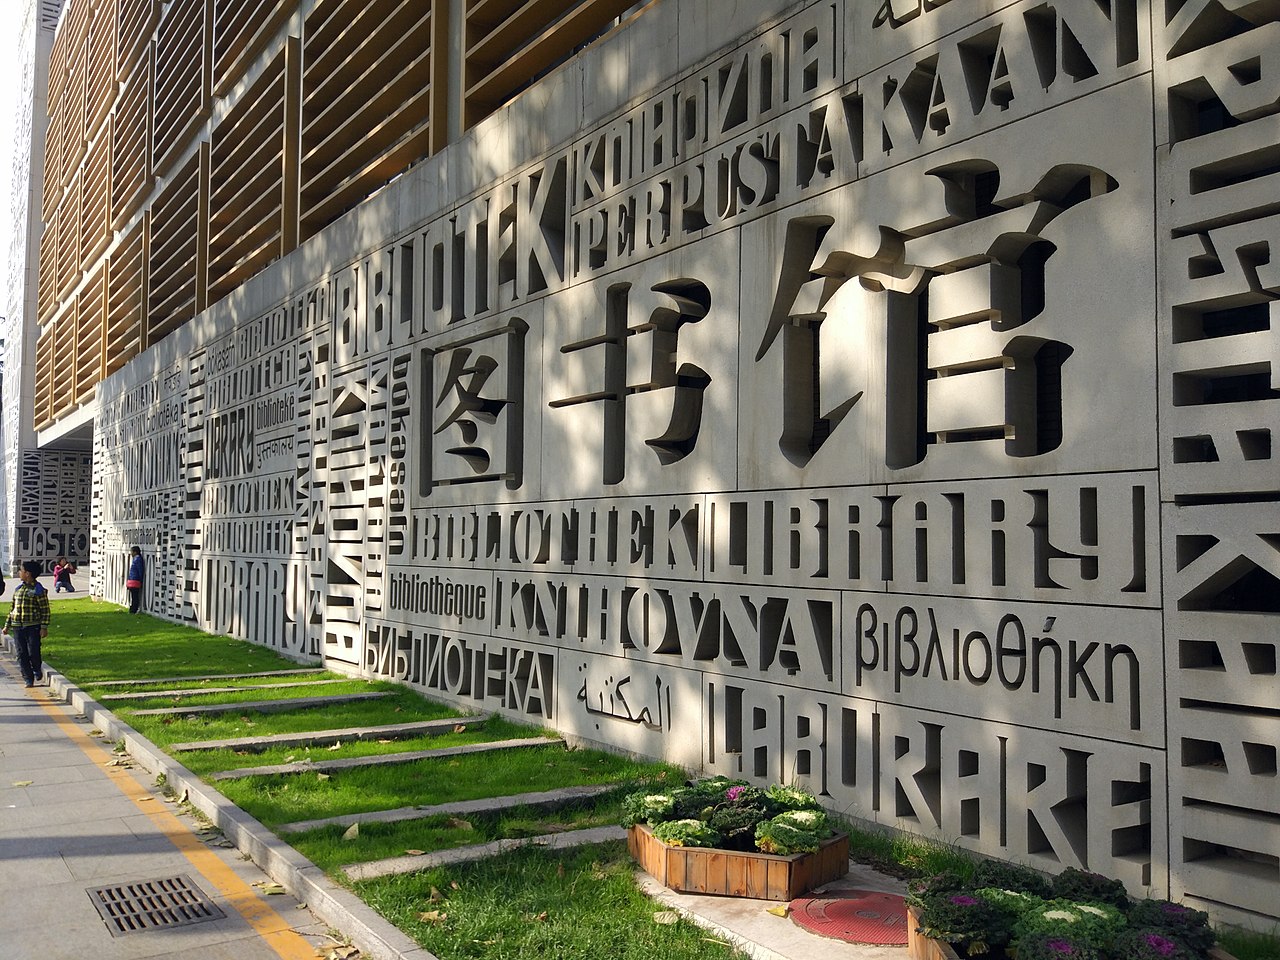 Đại học Ngoại ngữ Bắc Kinh - Trung Quốc